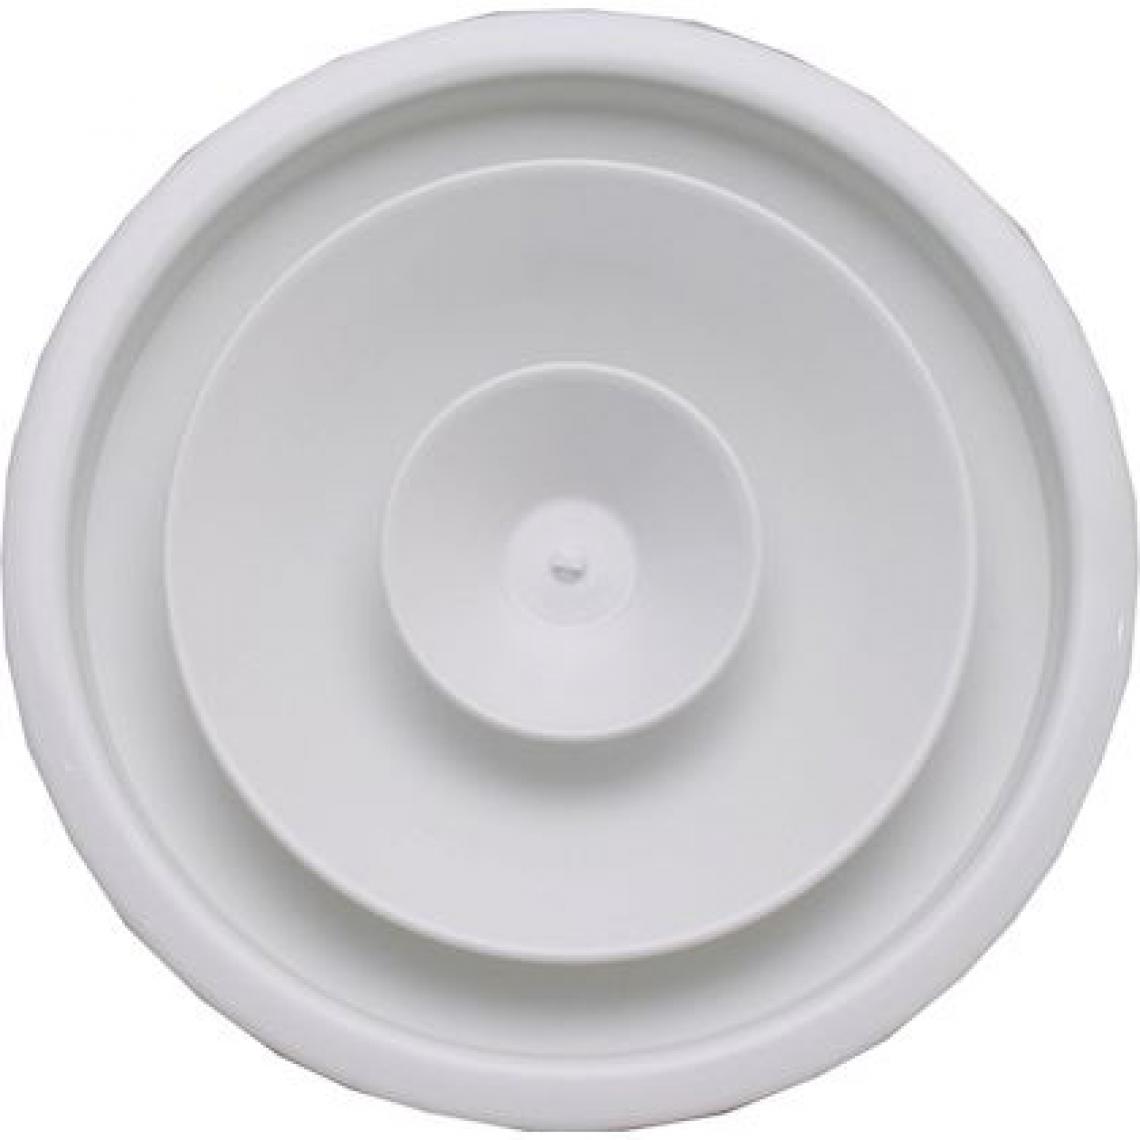 Unelvent - diffuseur circulaire - a cône réglable - blanc - 200 mm - unelvent 854116 - Grille d'aération